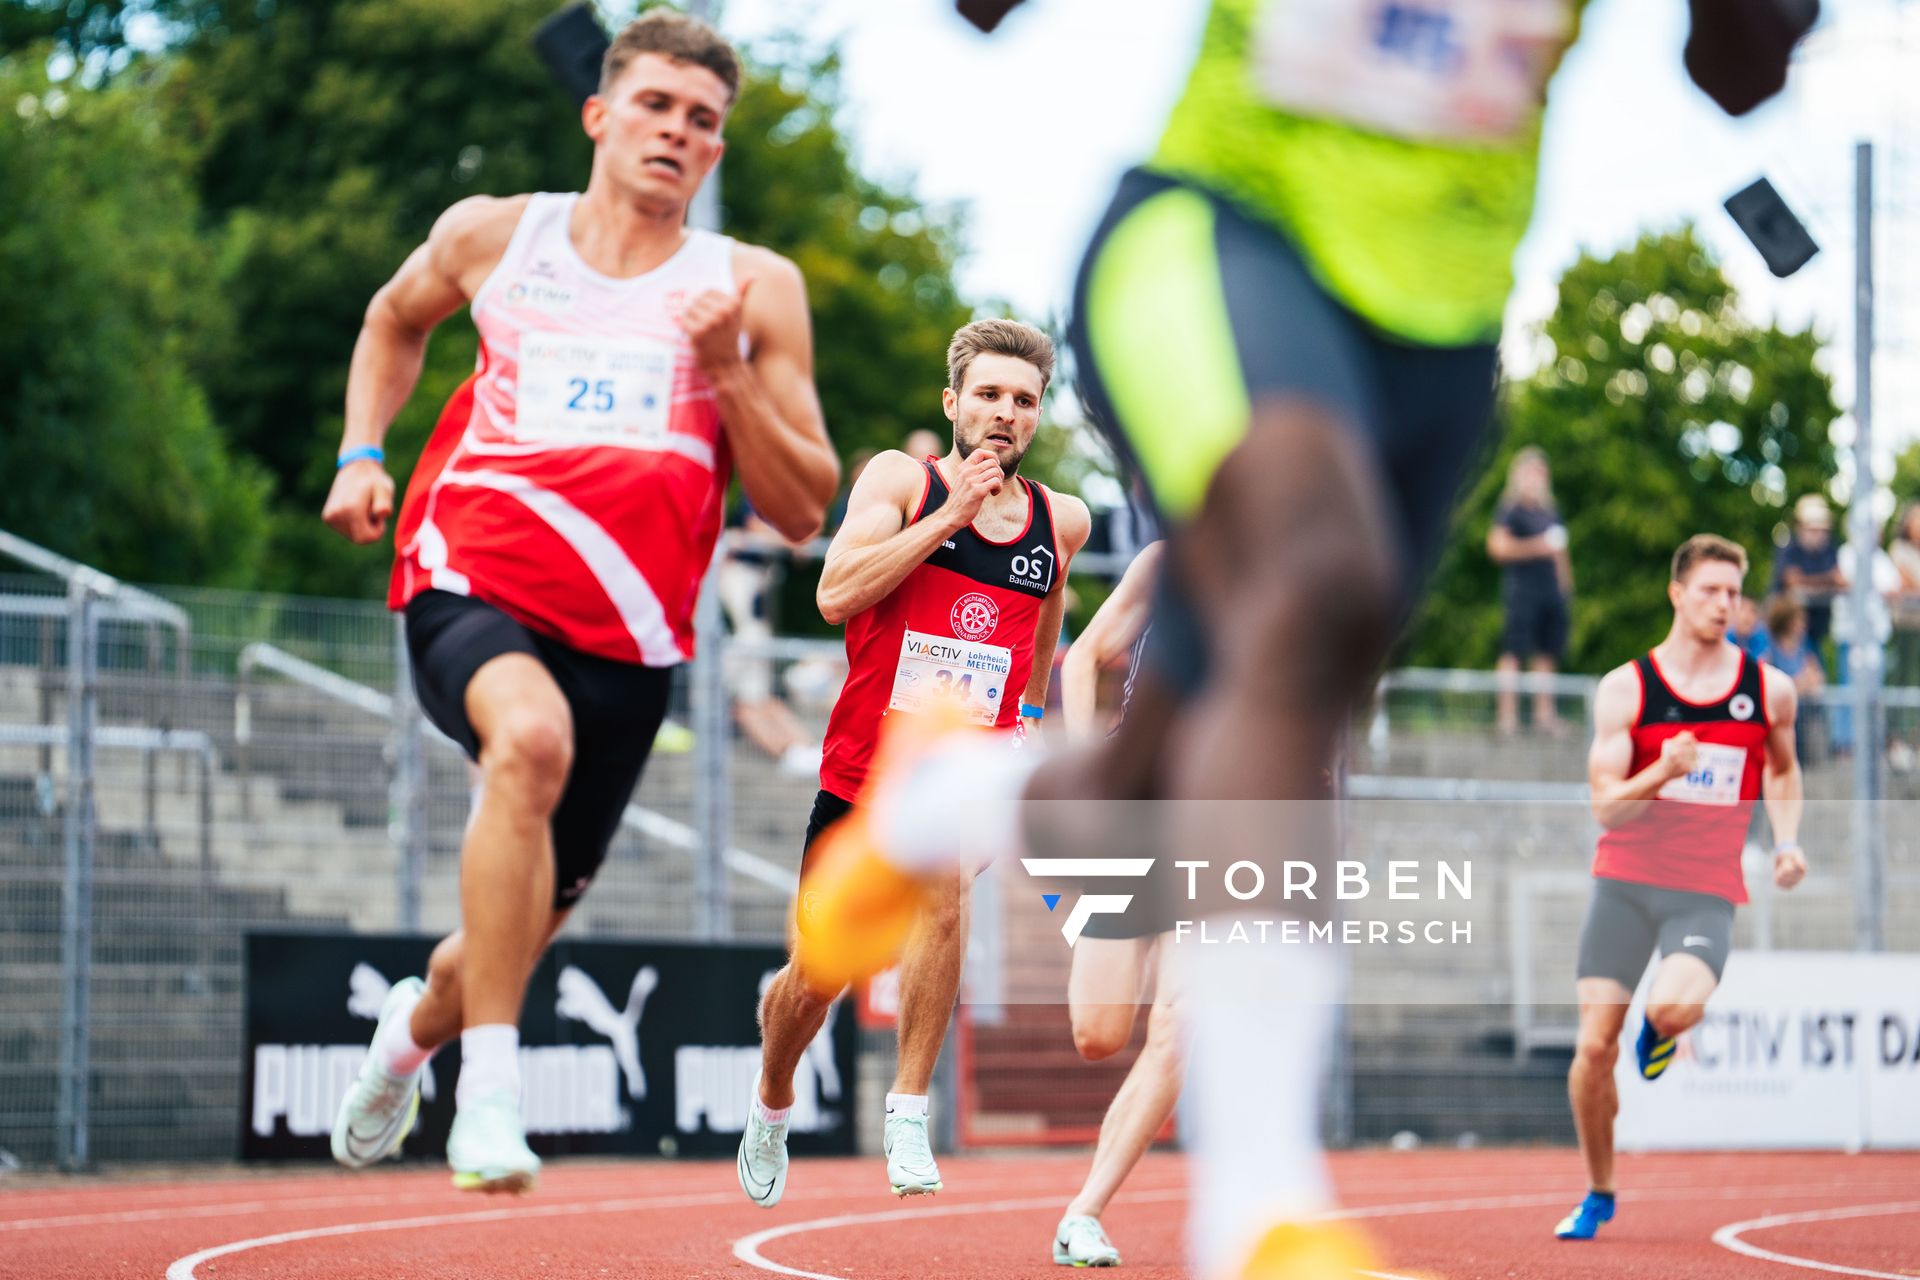 Fabian Dammermann (LG Osnabrueck) ueber 400m am 06.08.2022 beim Lohrheide-Meeting im Lohrheidestadion in Bochum-Wattenscheid